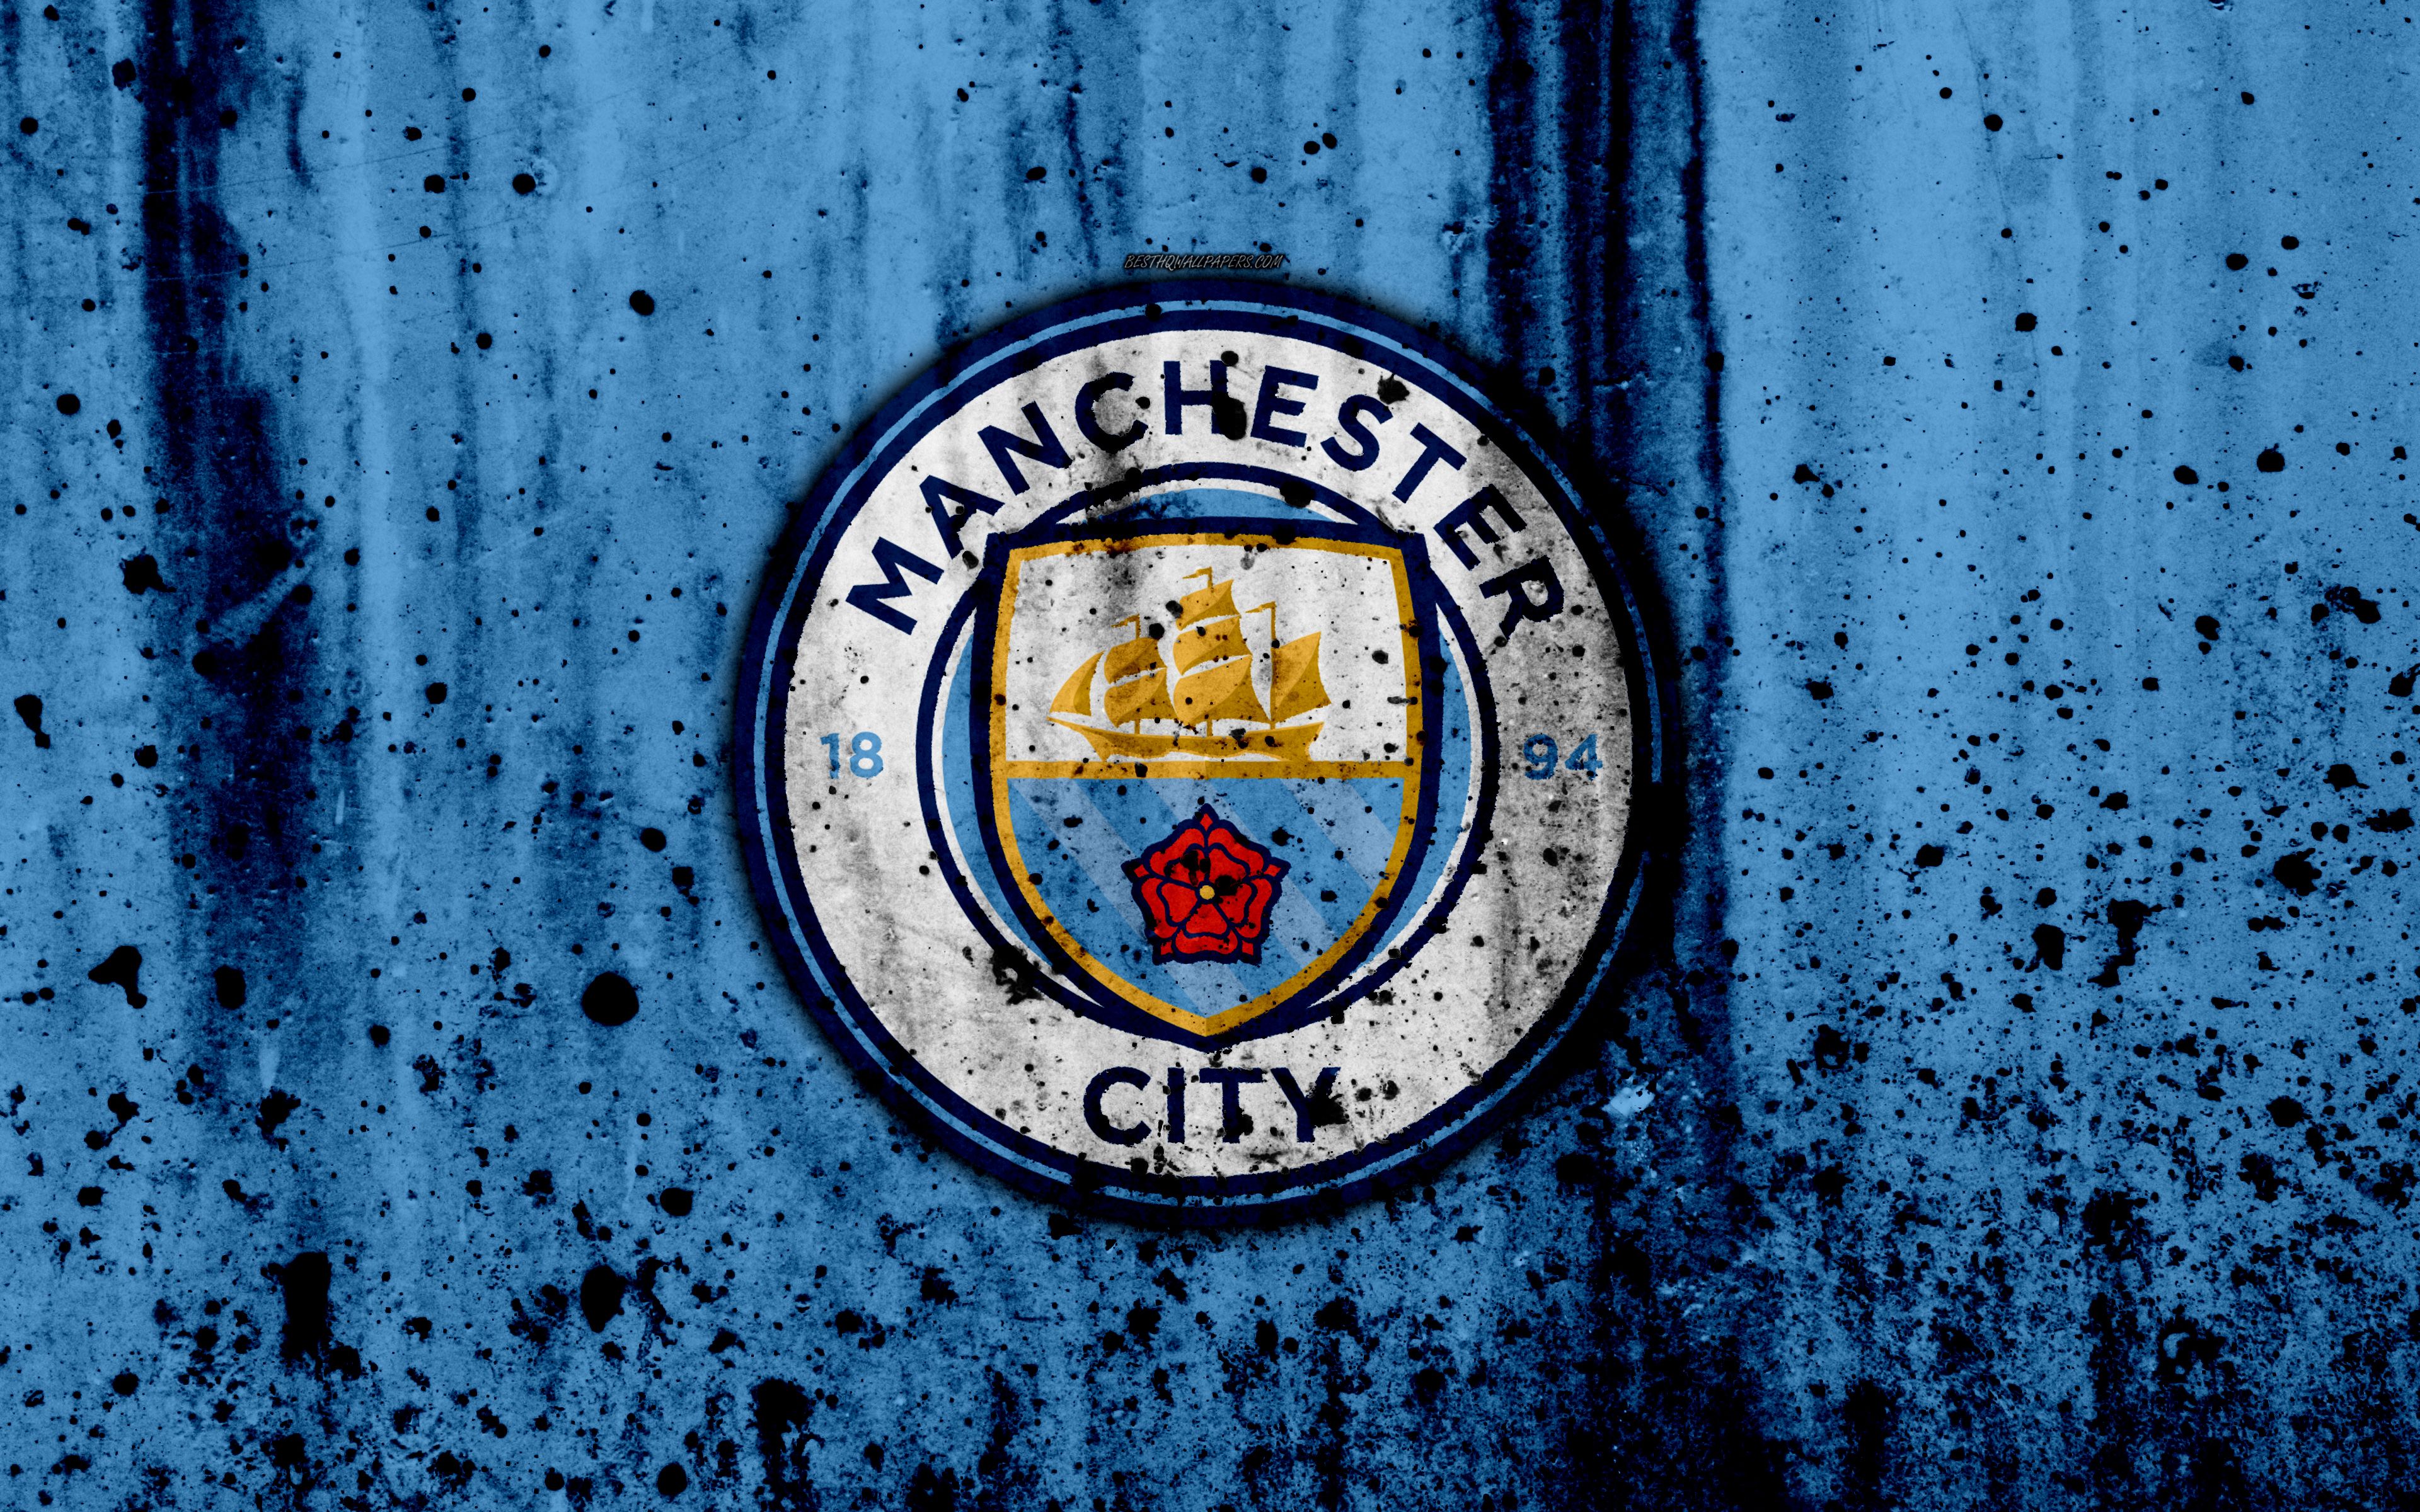 Bộ Sưu Tập Hình Nền Tuyệt Vời Cho Điện Thoại và Máy Tính từ Manchester City